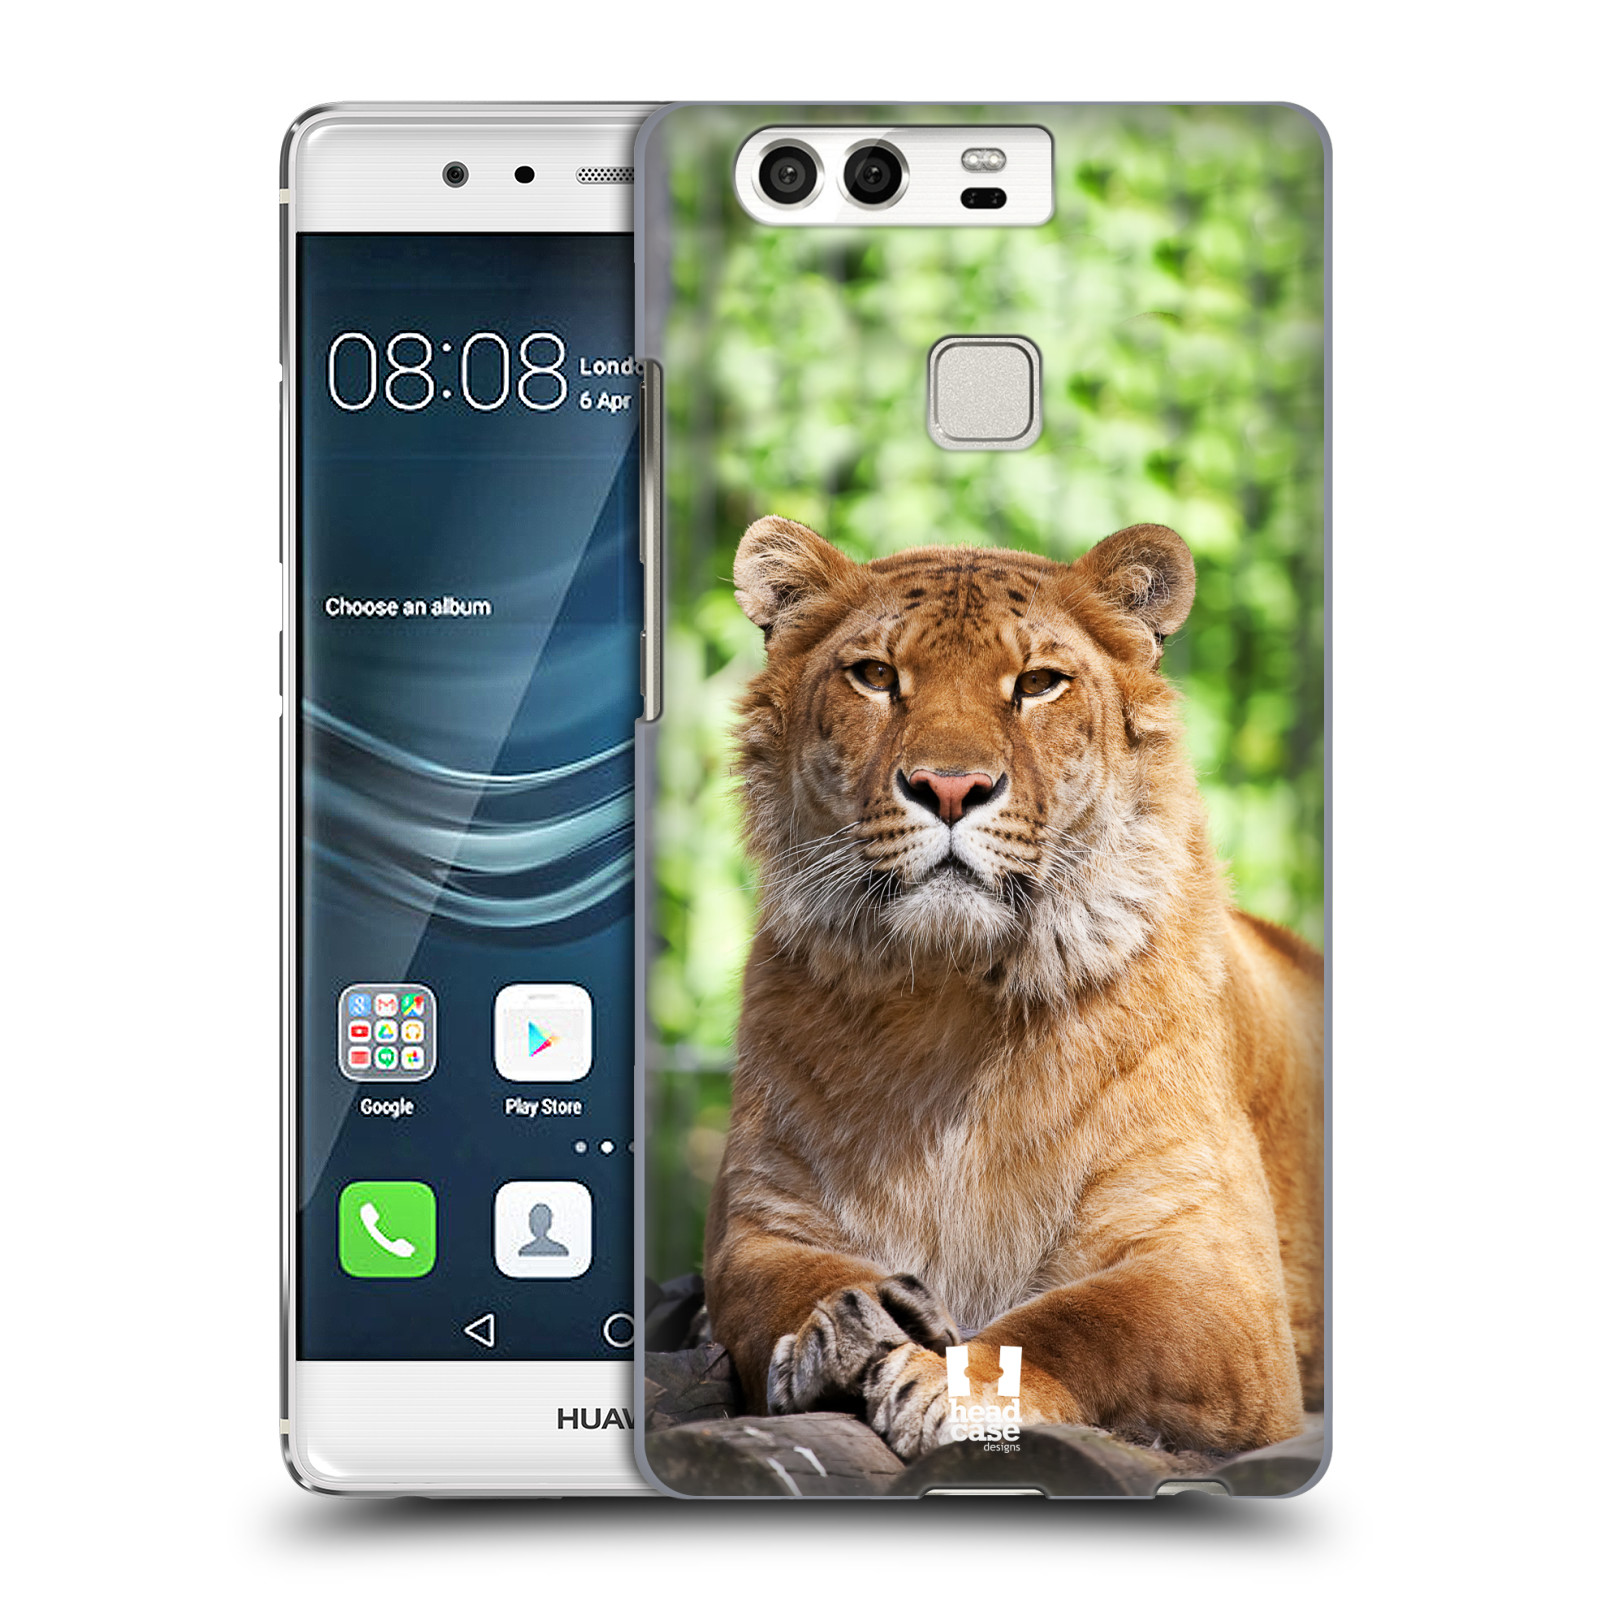 HEAD CASE plastový obal na mobil Huawei P9 / P9 DUAL SIM vzor slavná zvířata foto tygr